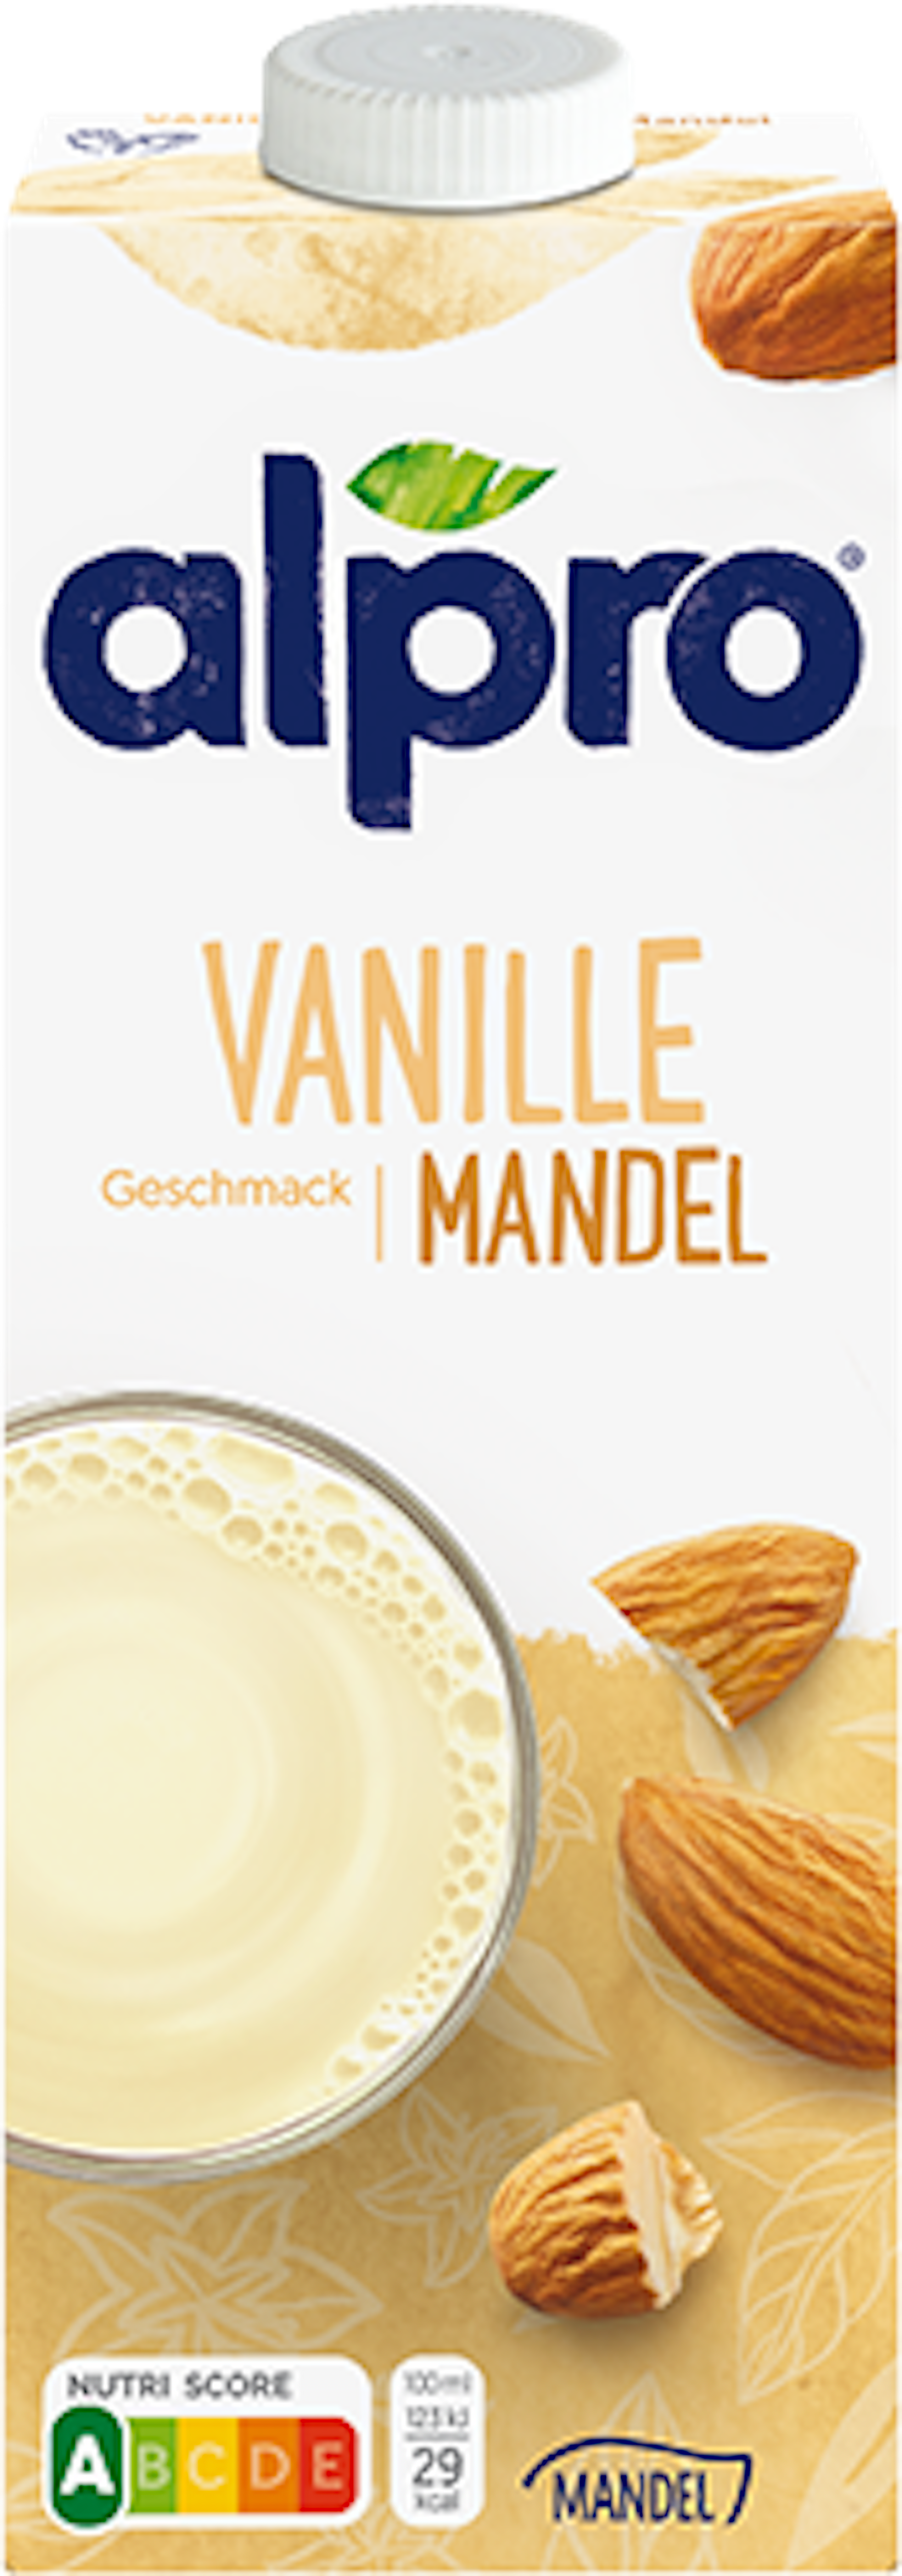 Almond Vanilla